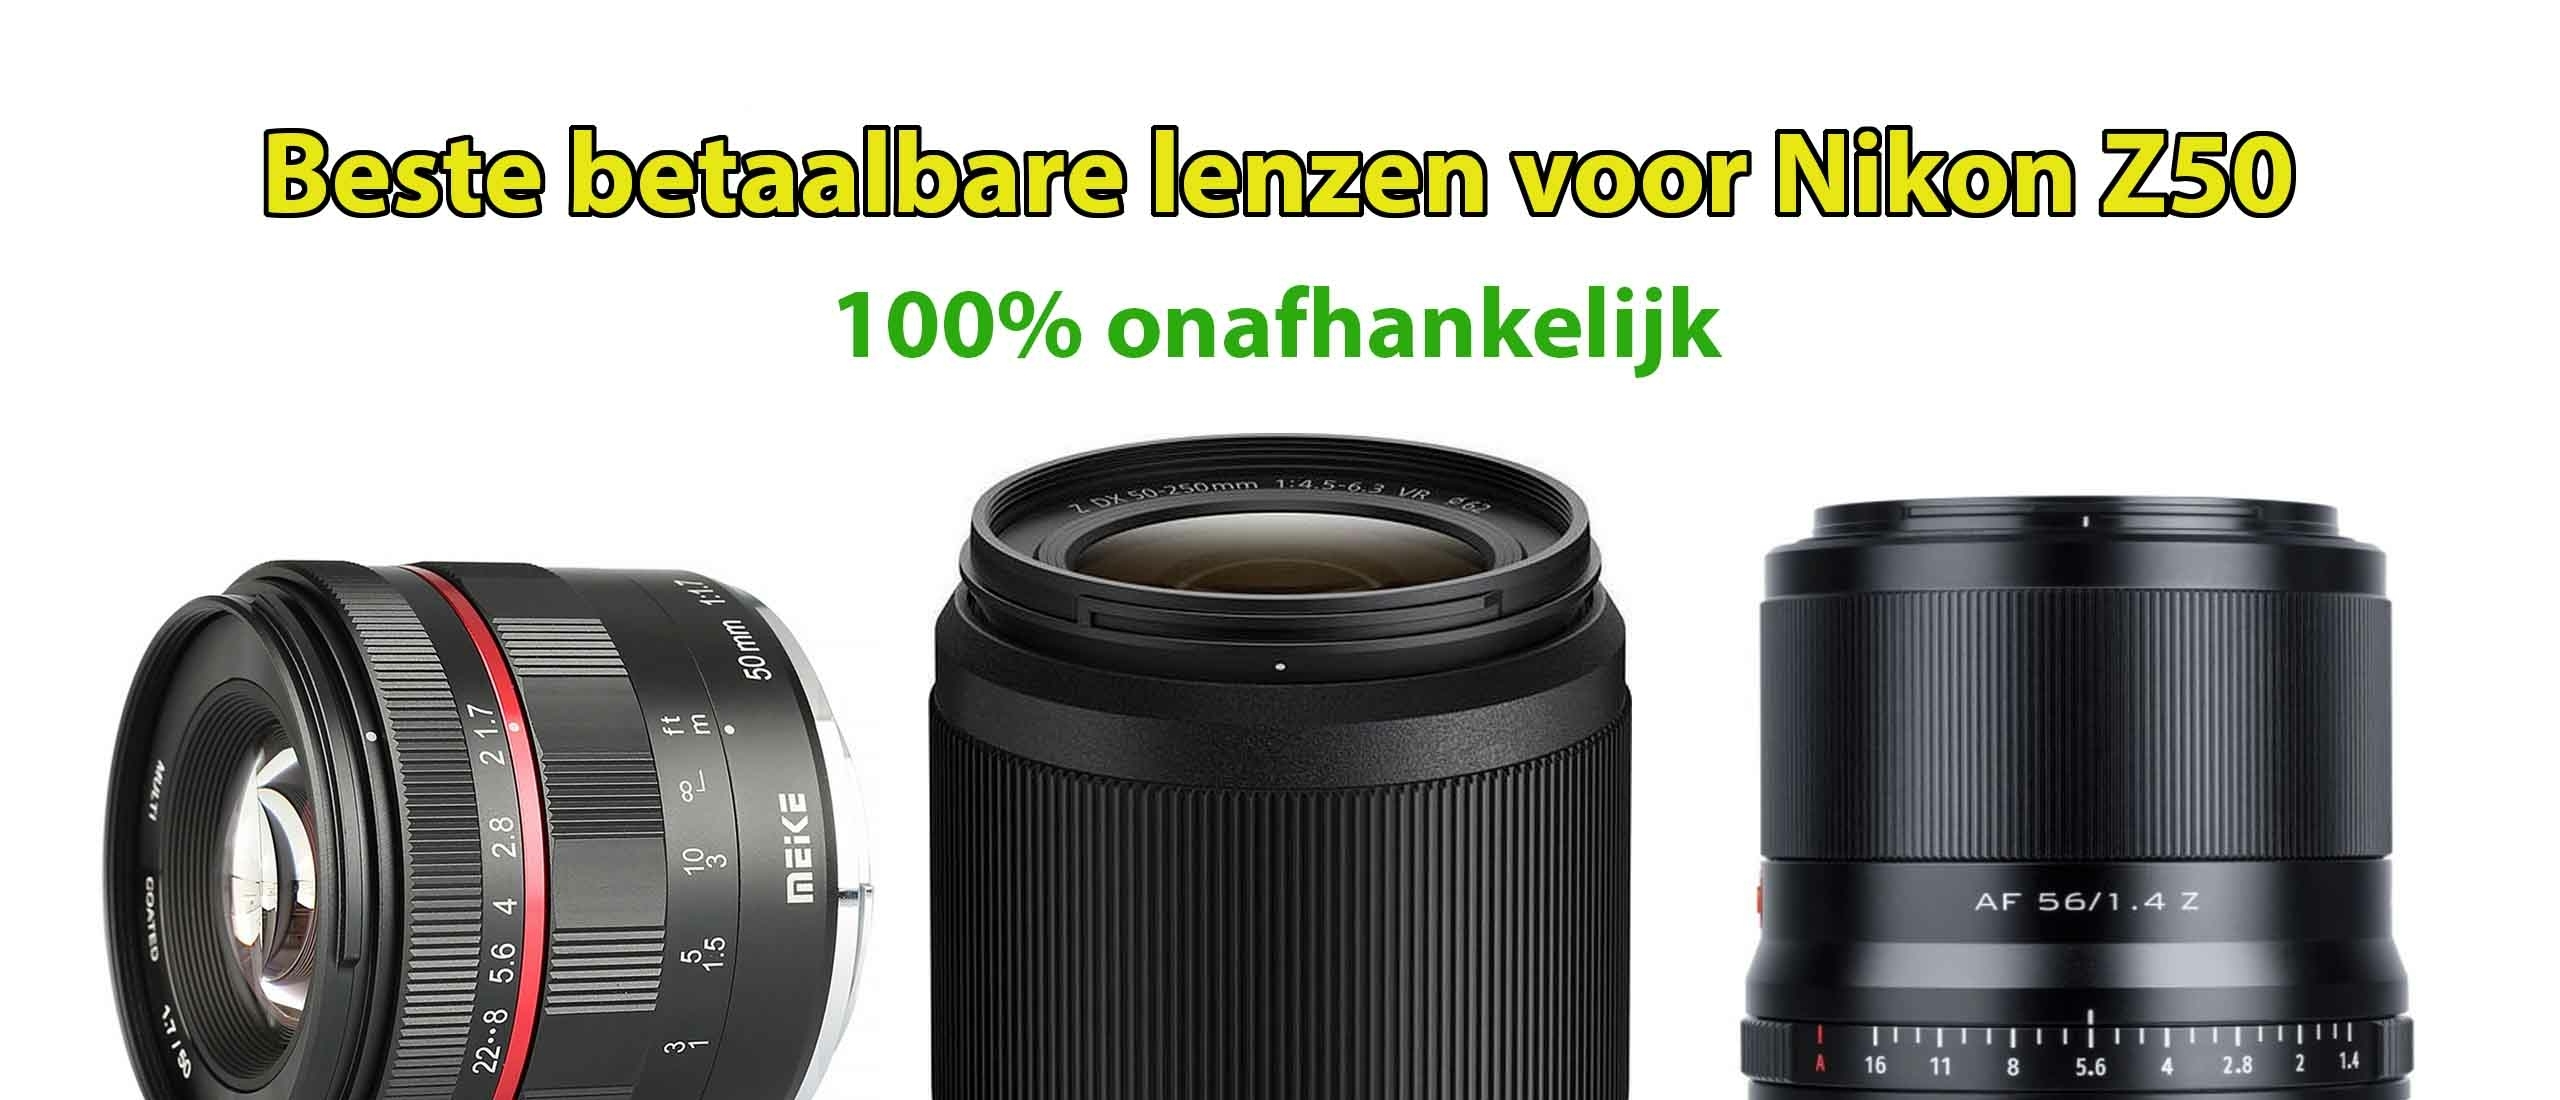 Beste betaalbare lens voor Nikon Z50 systeemcamera: welke moet je kopen?